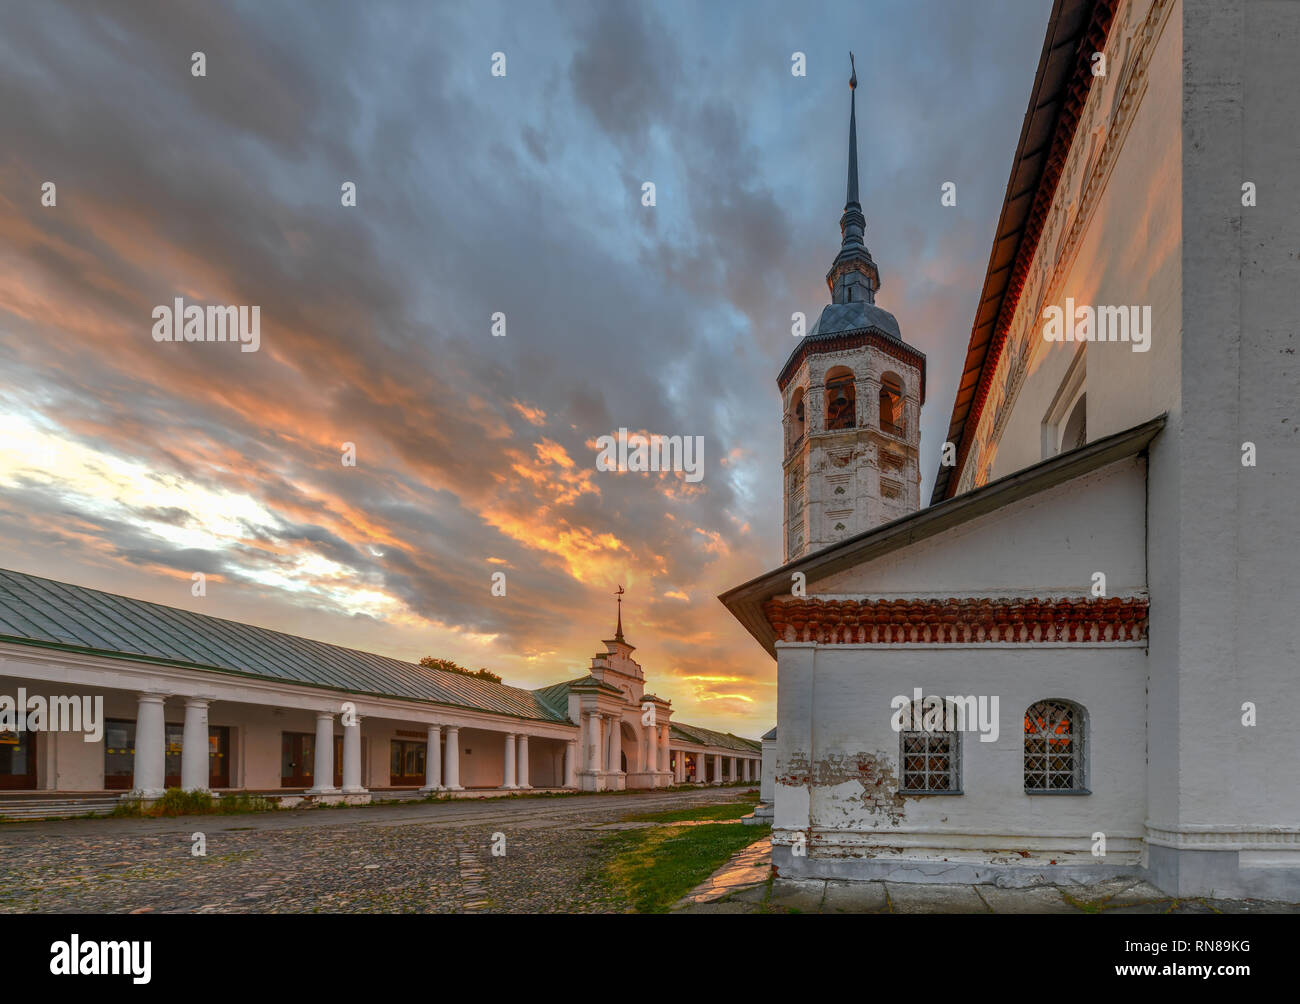 Kirche der Ikone der Gottesmutter von Smolensk in Susdal. Susdal ist eine berühmte Touristenattraktion und Teil des Goldenen Ring von Russland. Stockfoto